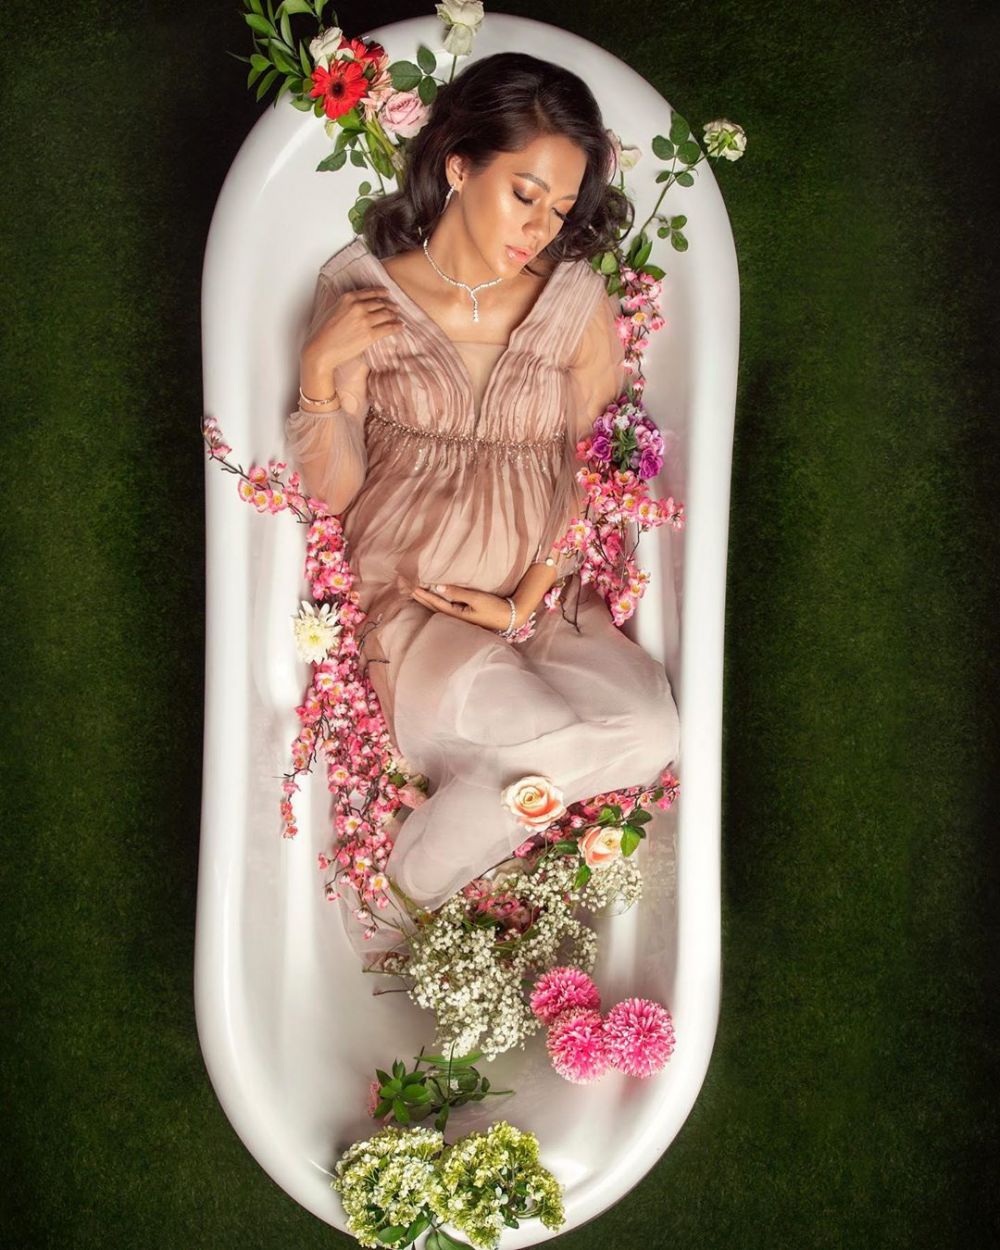 Potret maternity 5 seleb di bathtub, auranya terpancar